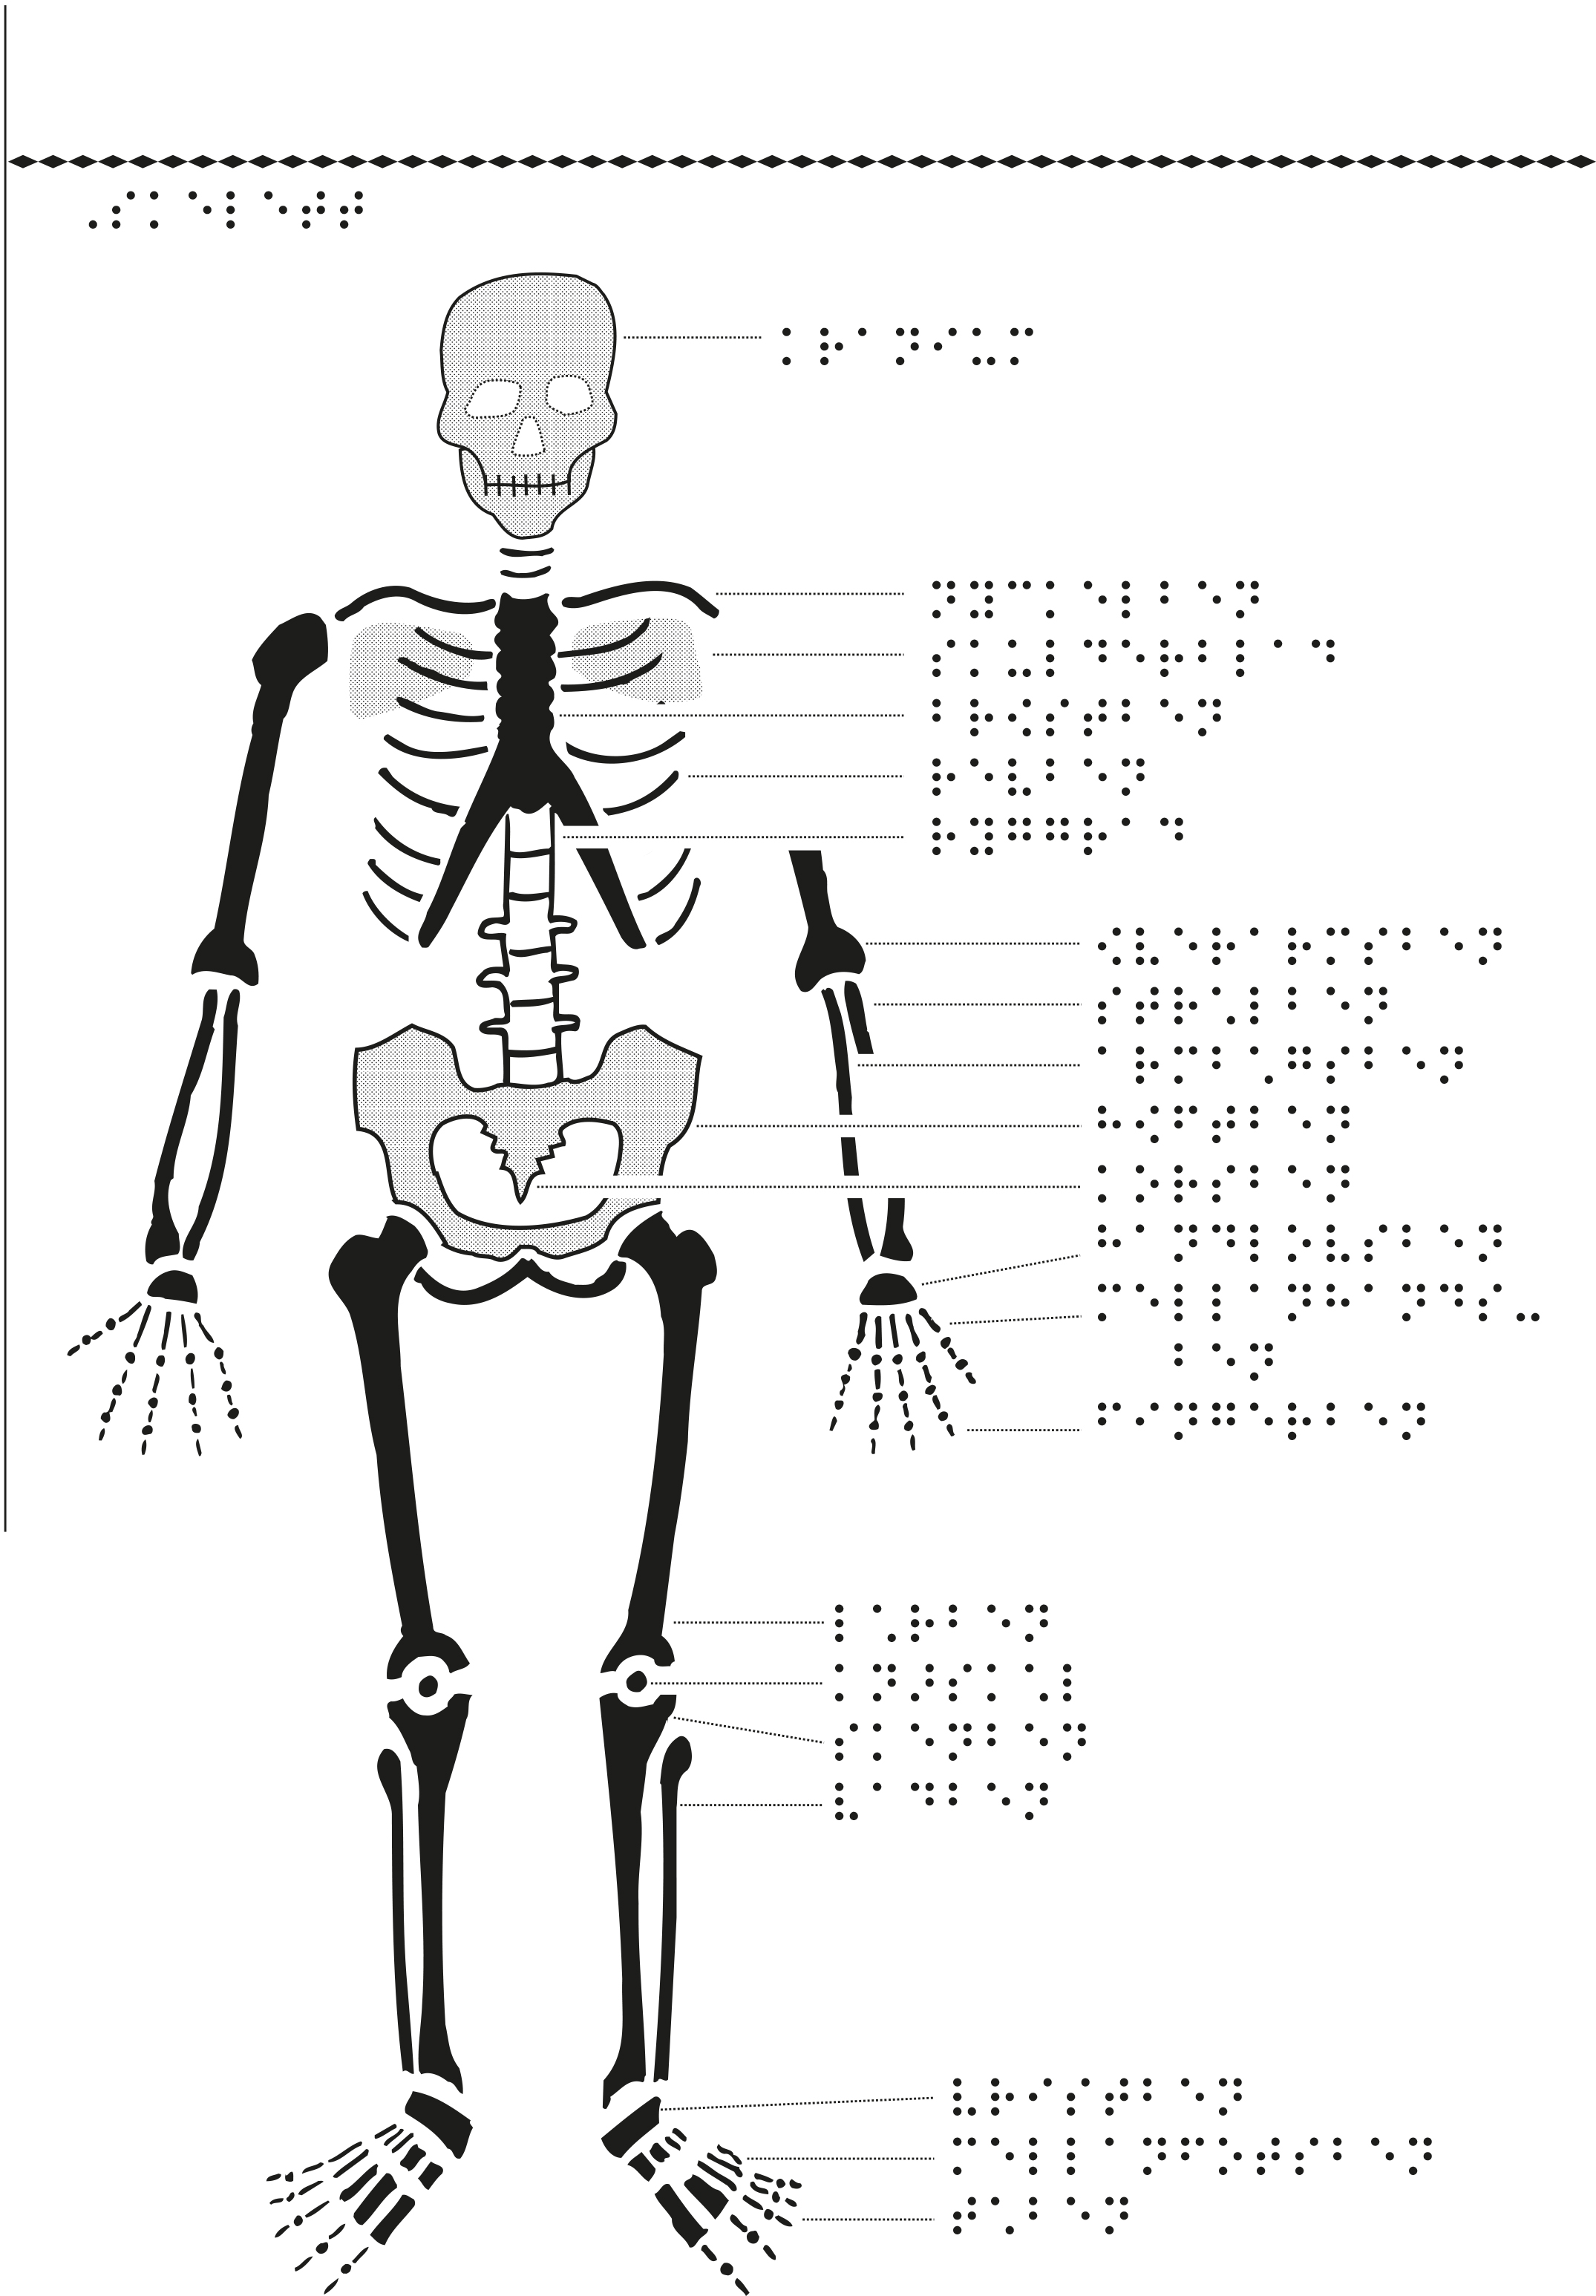 Manligt skelett framifrån med punktskrift.